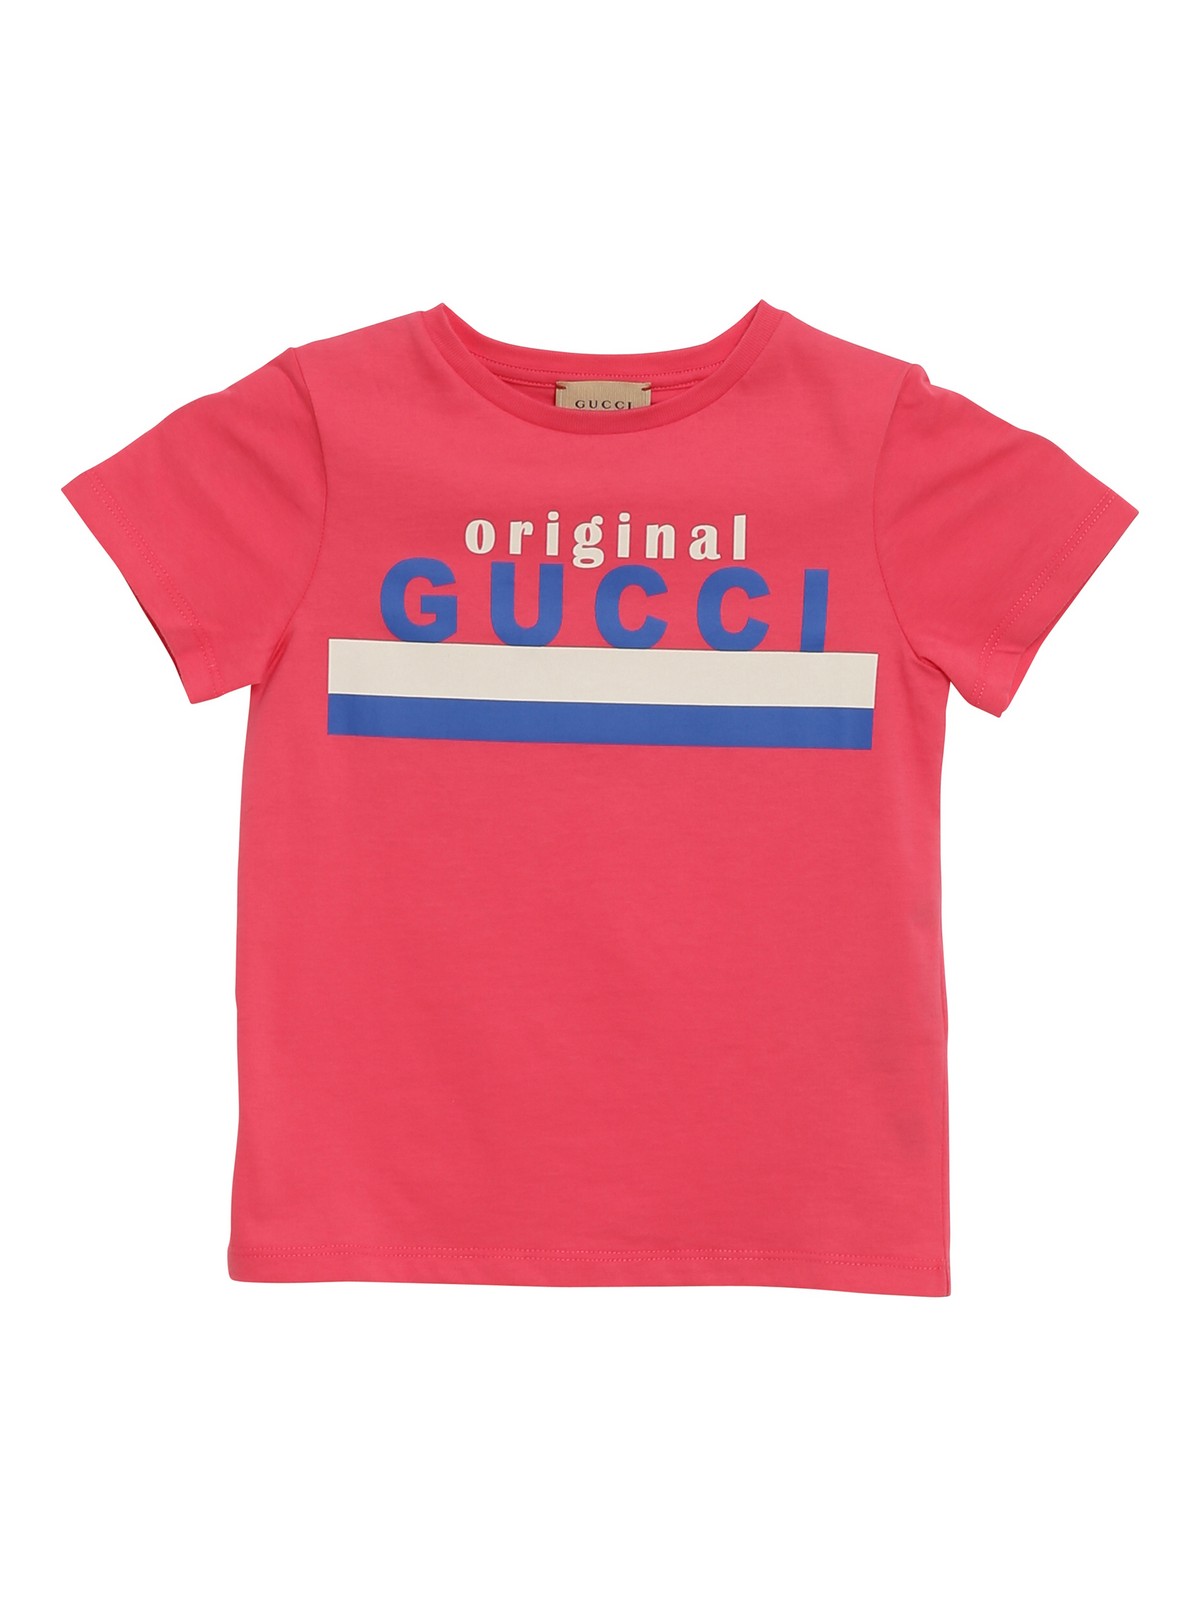 T-shirts Gucci - Original Gucci T-shirt - 561651XJC7M5199 | iKRIX.com